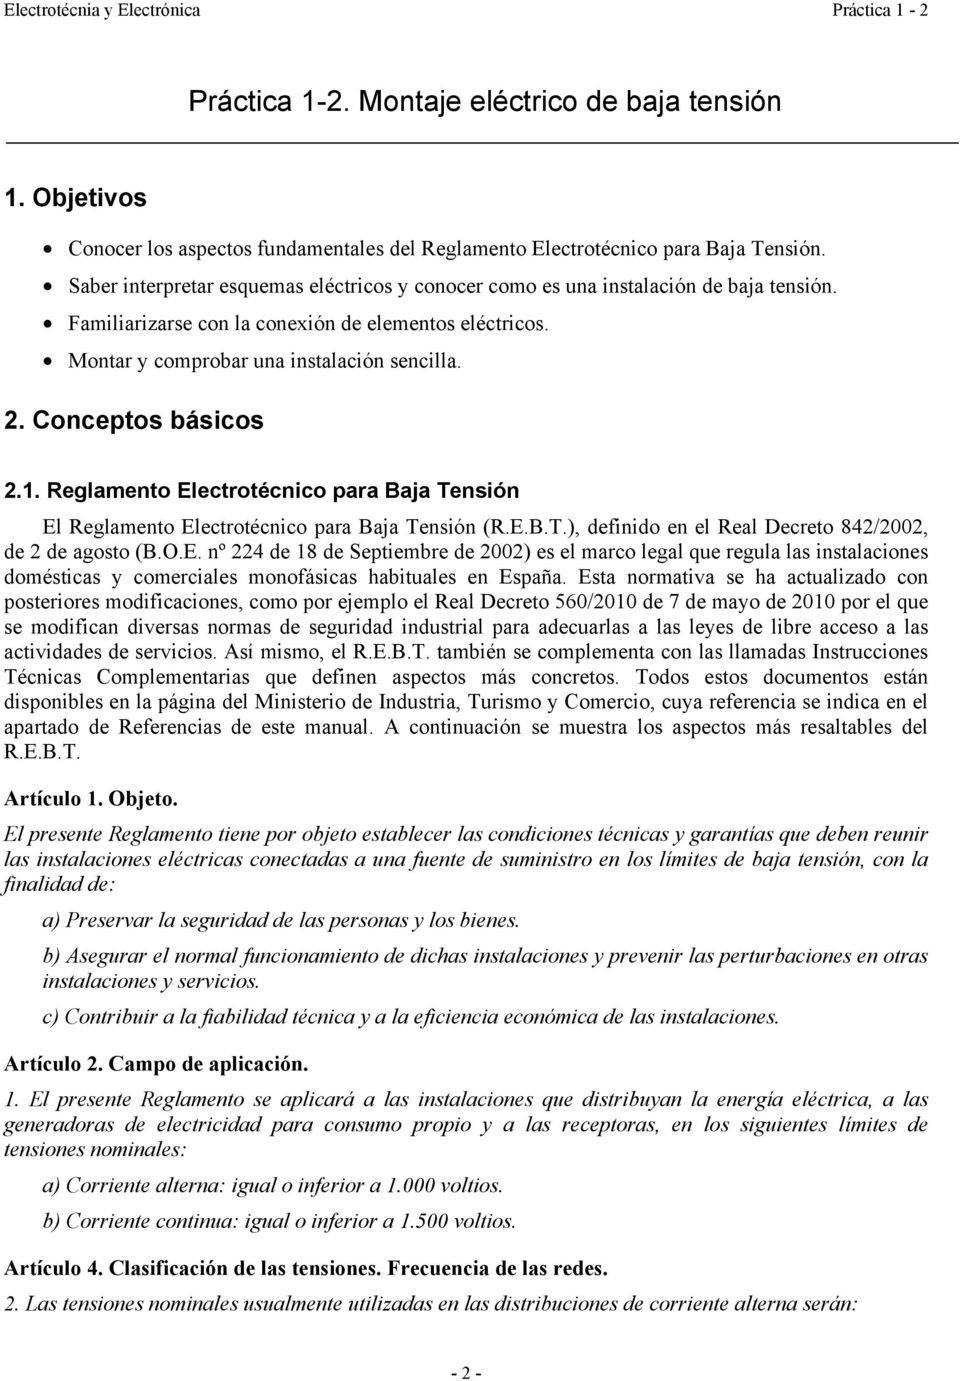 Conceptos básicos 2.1. Reglamento Electrotécnico para Baja Tensión El Reglamento Electrotécnico para Baja Tensión (R.E.B.T.), definido en el Real Decreto 842/2002, de 2 de agosto (B.O.E. nº 224 de 18 de Septiembre de 2002) es el marco legal que regula las instalaciones domésticas y comerciales monofásicas habituales en España.